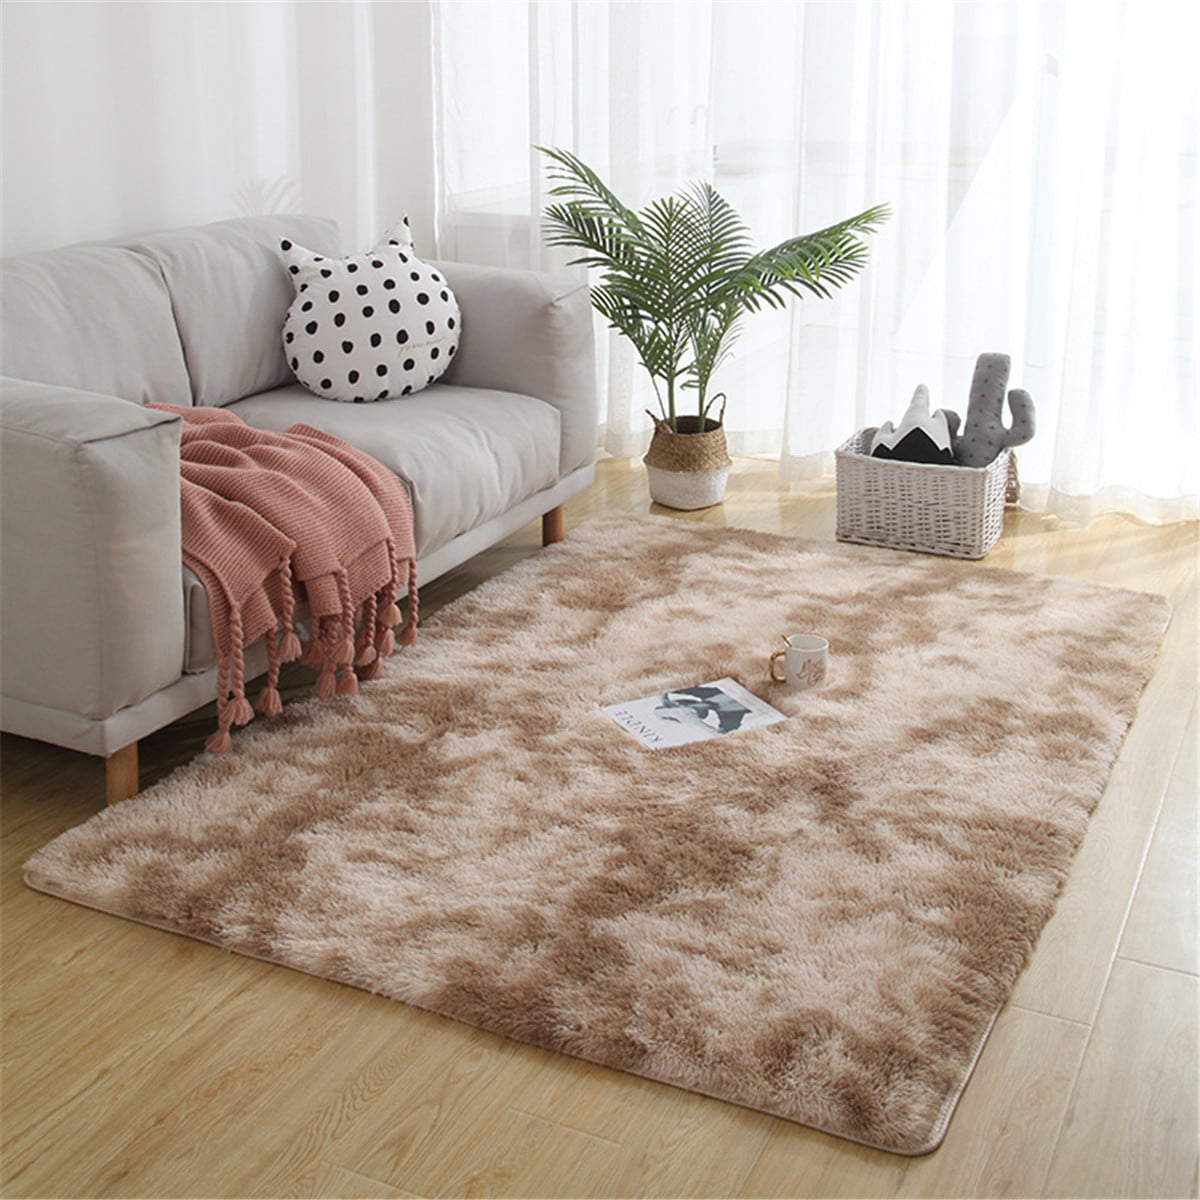 Nander Elephant Flower Dots Carpet Living Room Coffee Table Mat Super Soft Fluff Living Room Carpet Kids Bedroom Mat Rug 